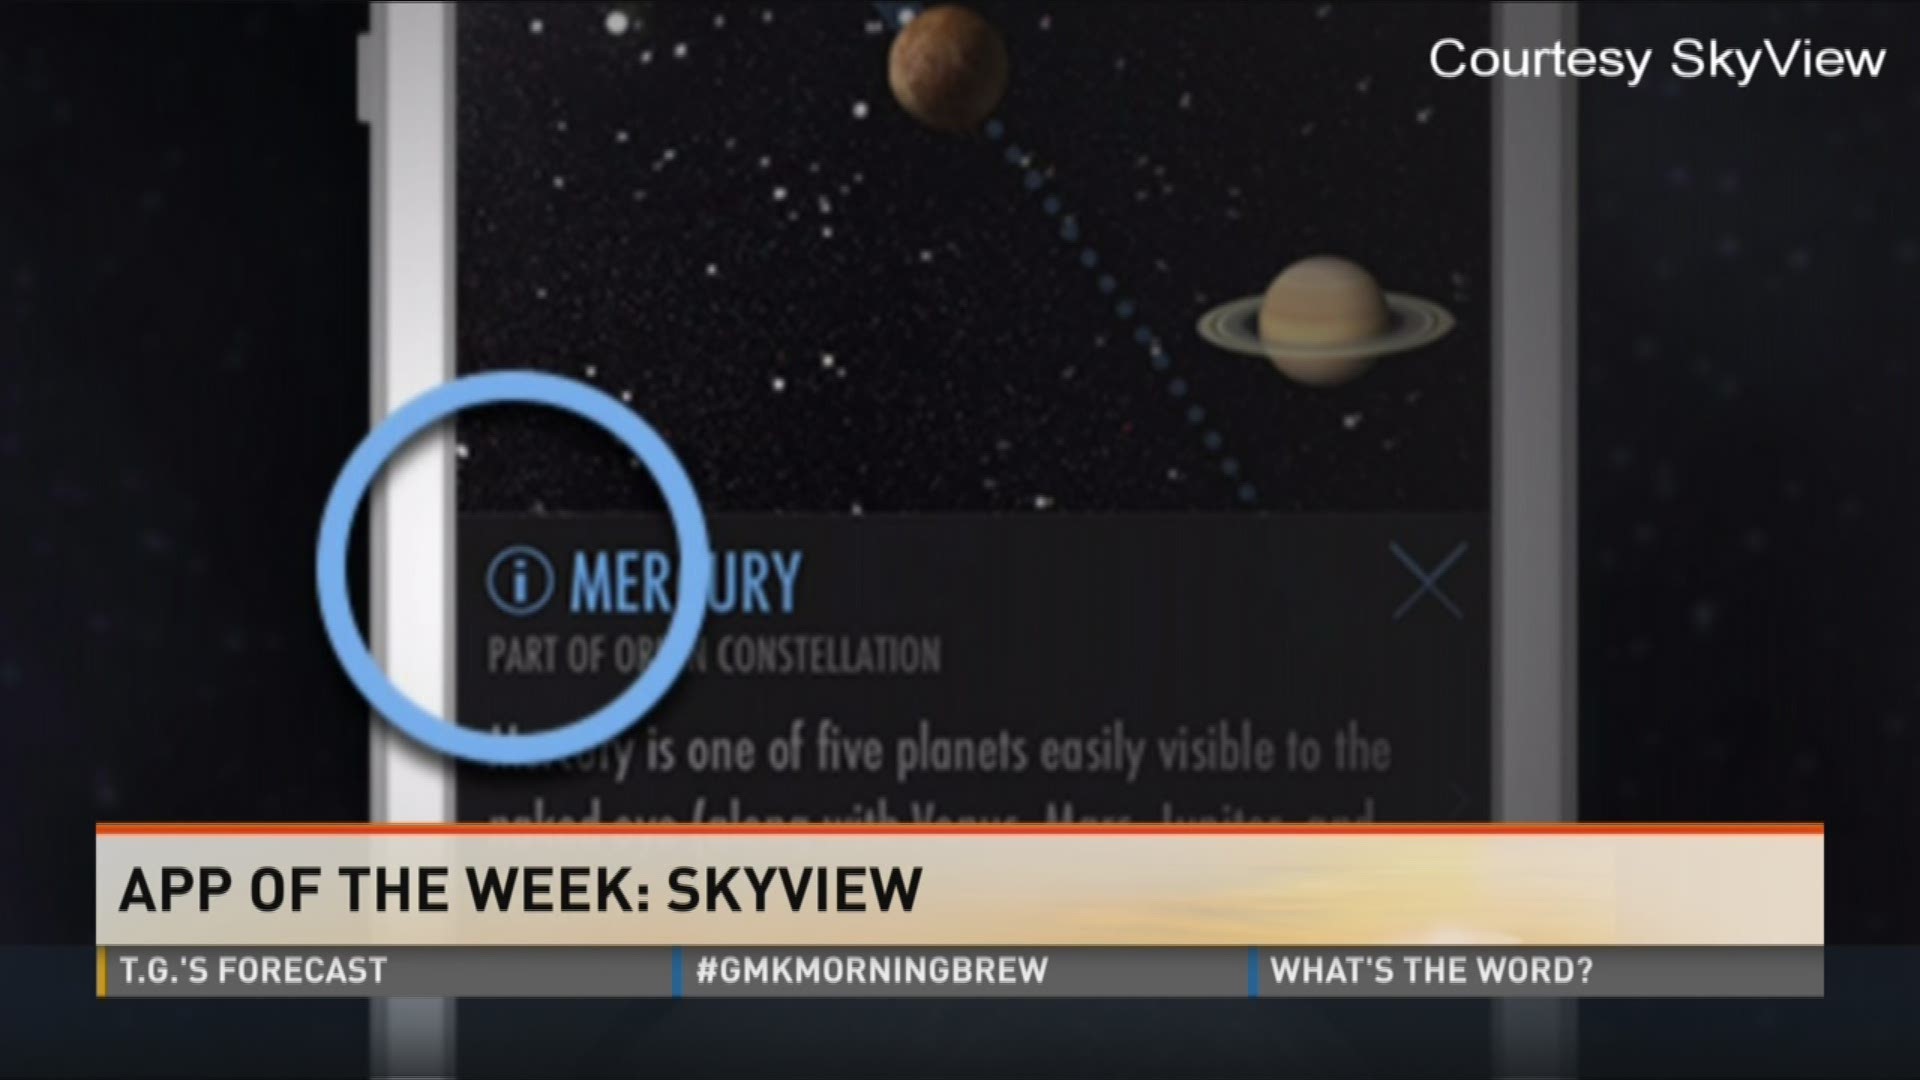 App of the week: Skyview